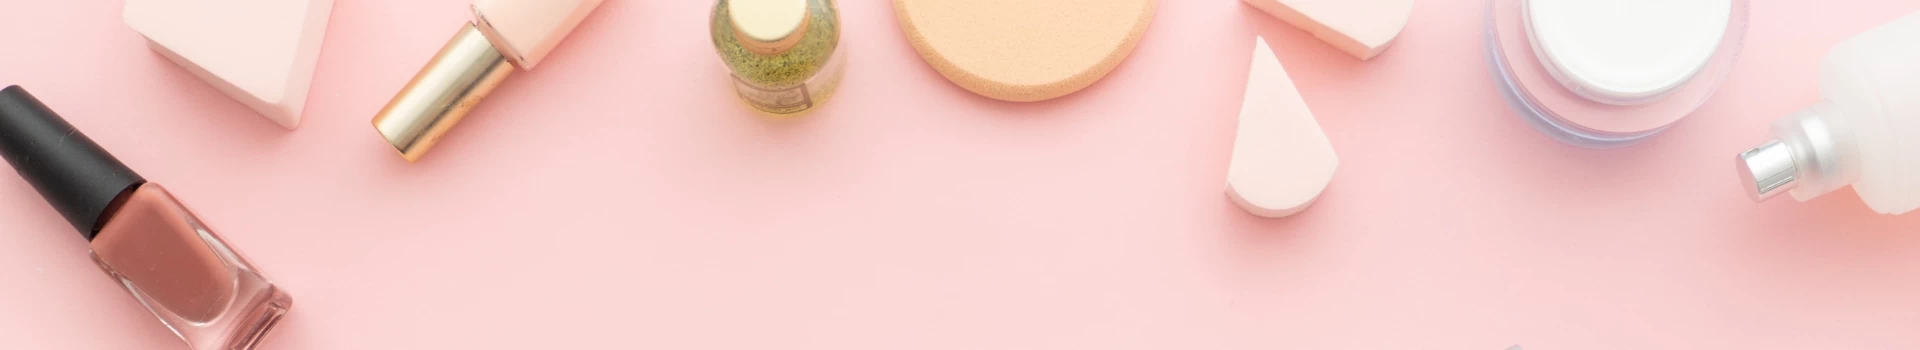 kosmetyki leżące na różowym biurku